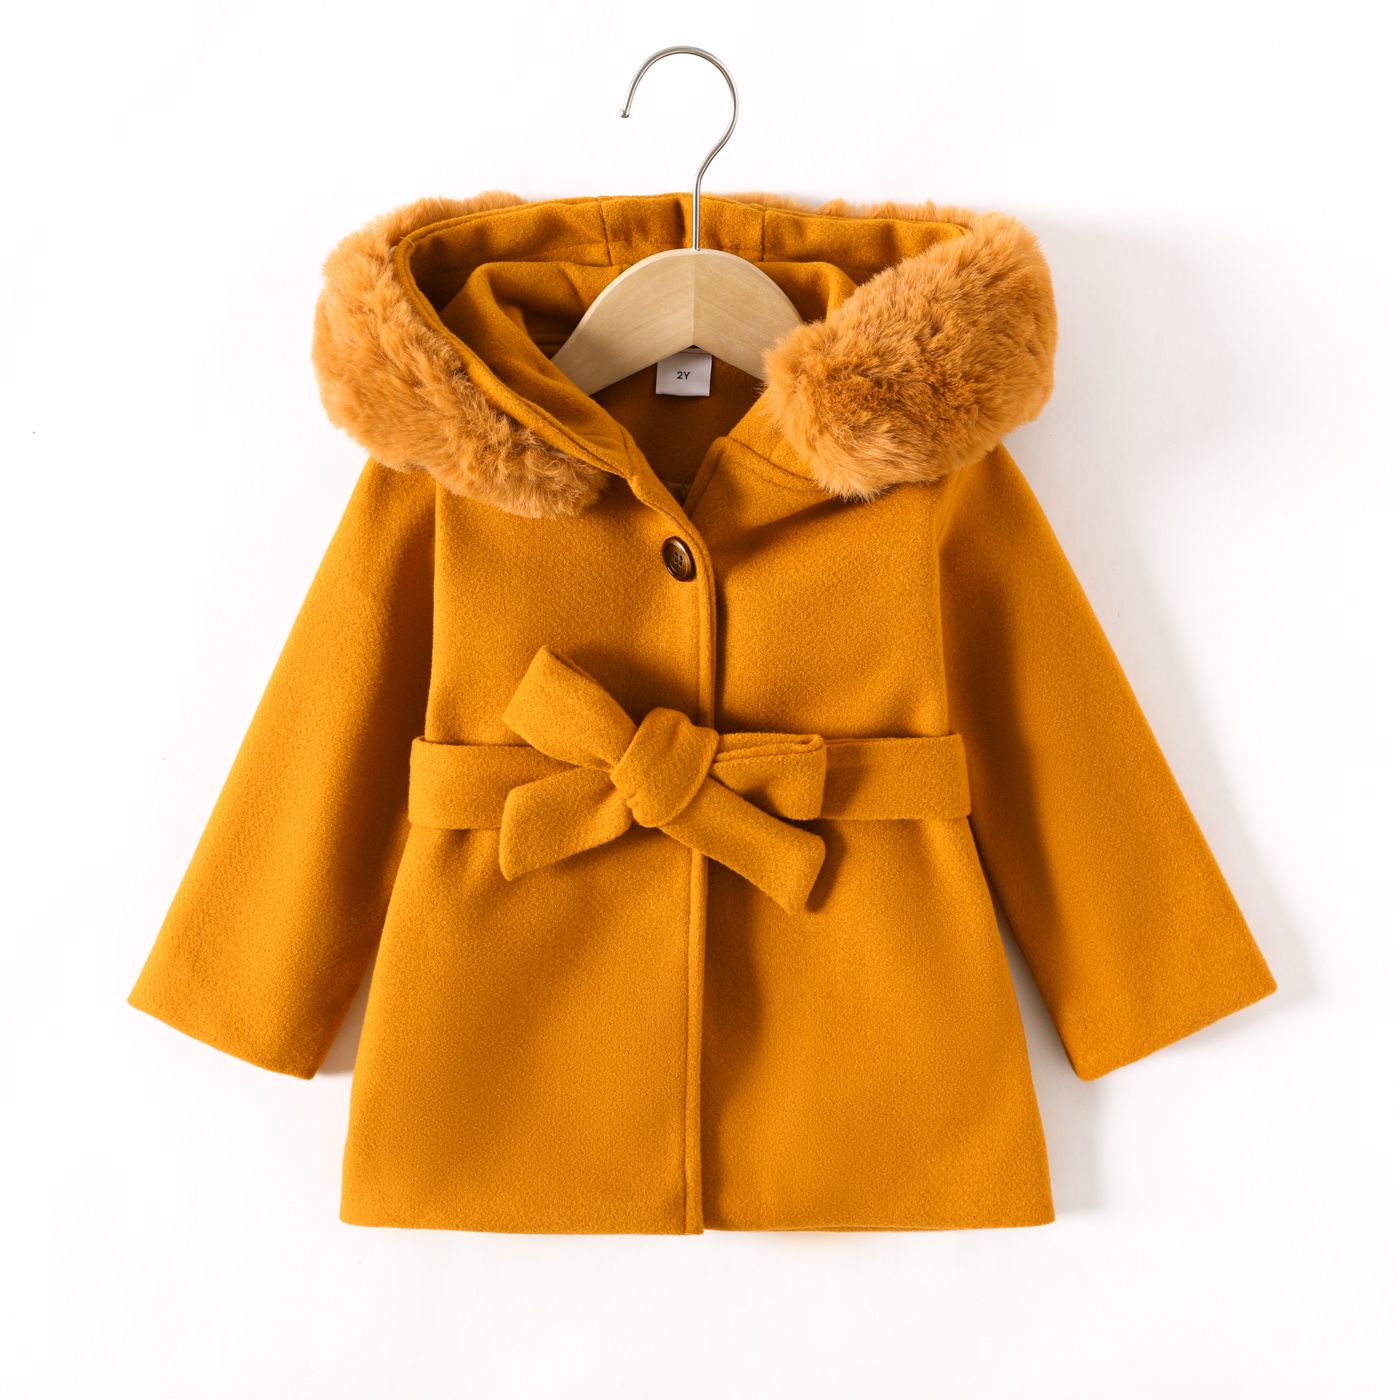 patpat tout-petit fille/garçon élégant manteau à capuche en fausse fourrure, brown